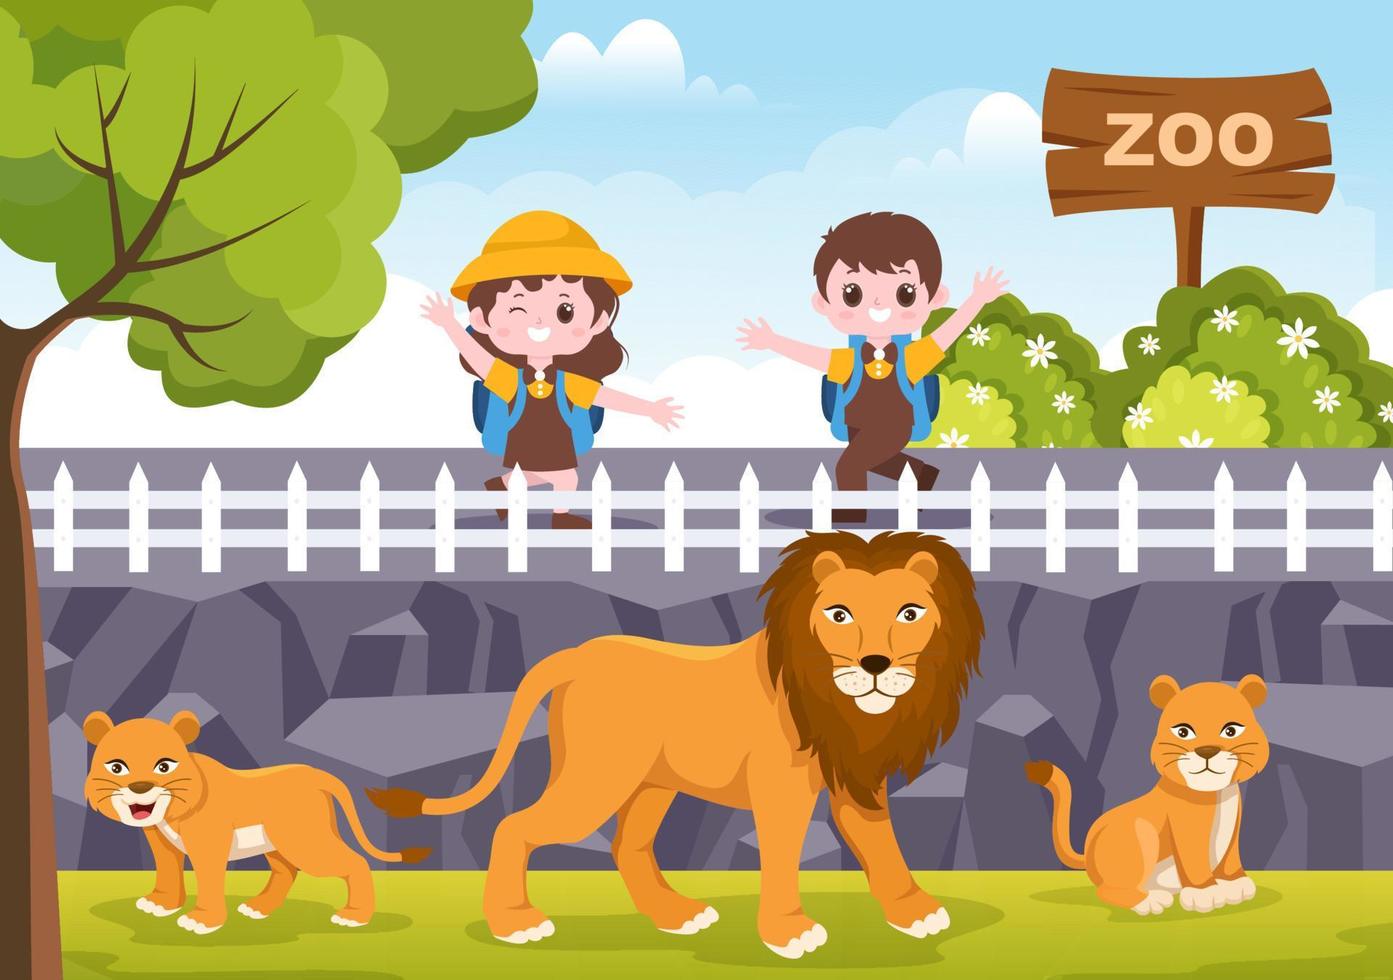 zookarikaturillustration mit safaritieren löwe, tiger, käfig und besuchern auf territorium auf waldhintergrunddesign vektor